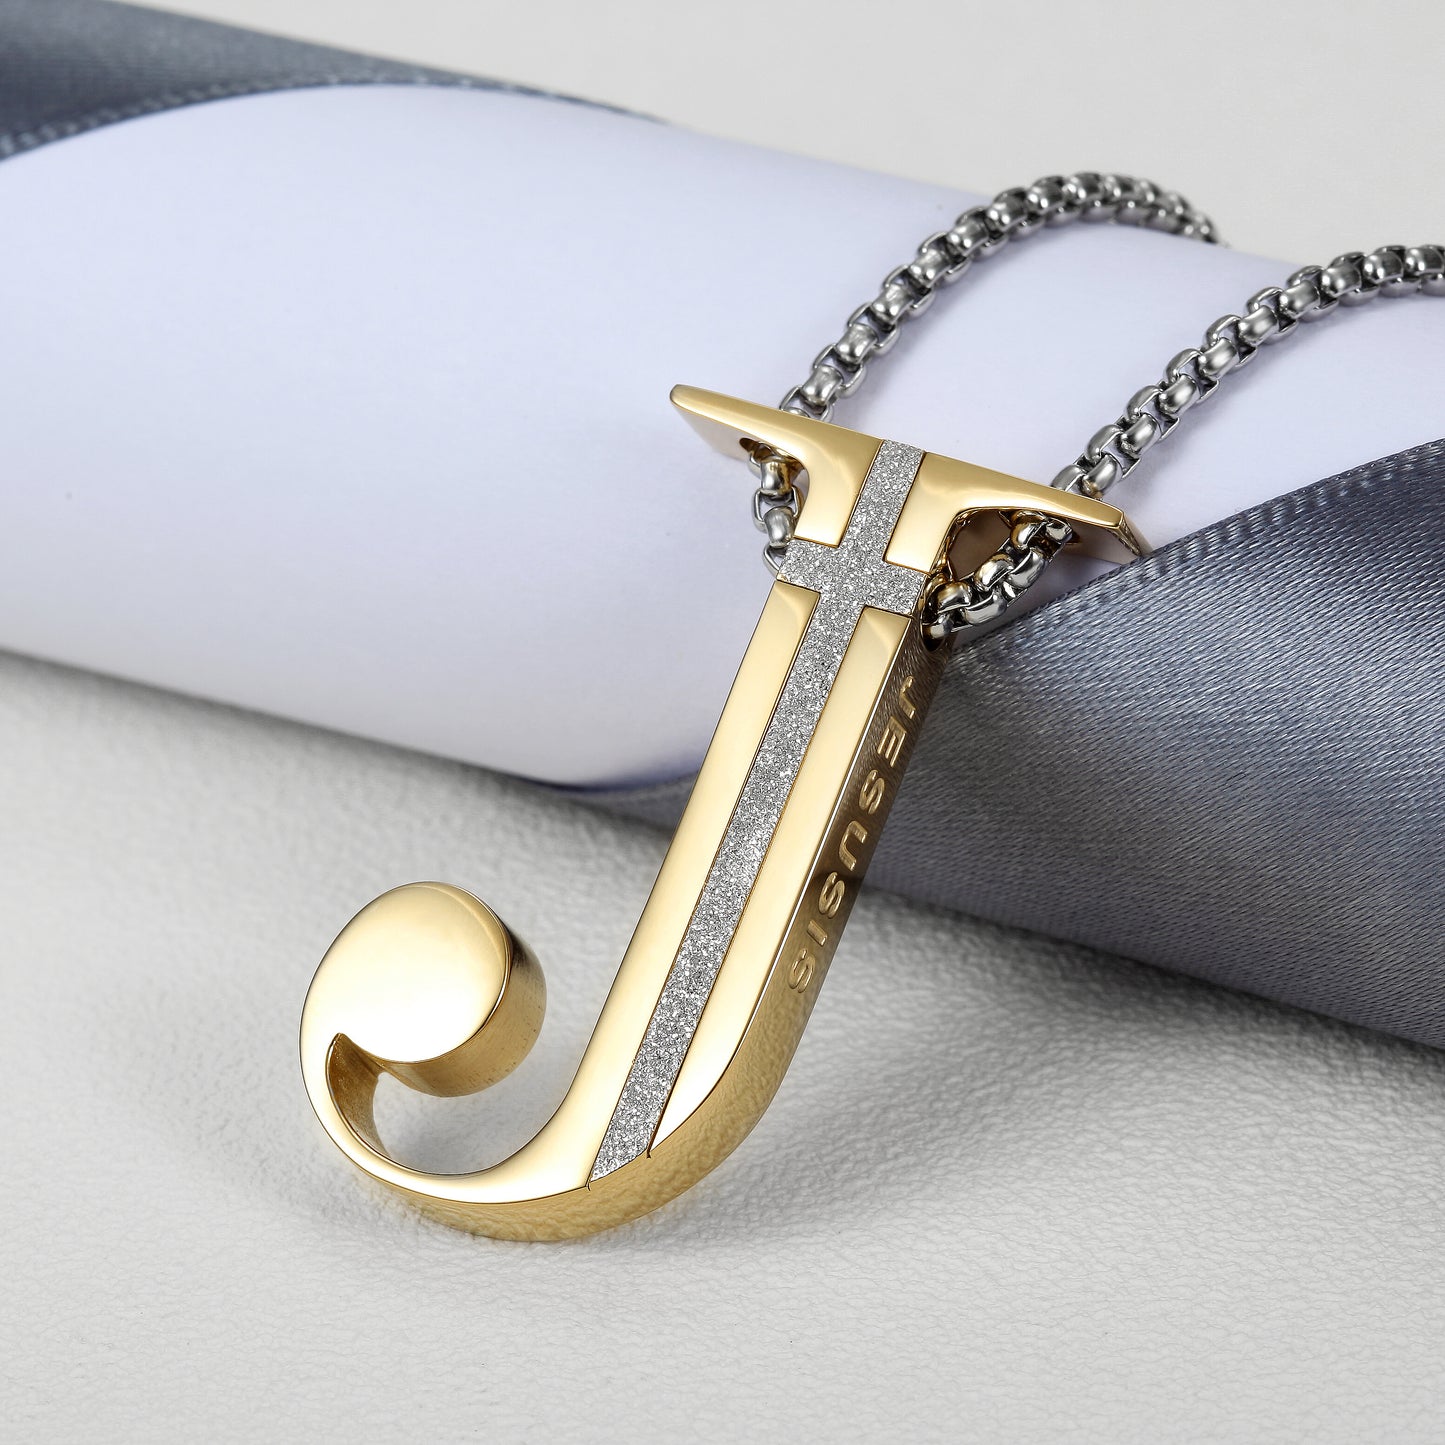 J-shaped Pendant Necklace